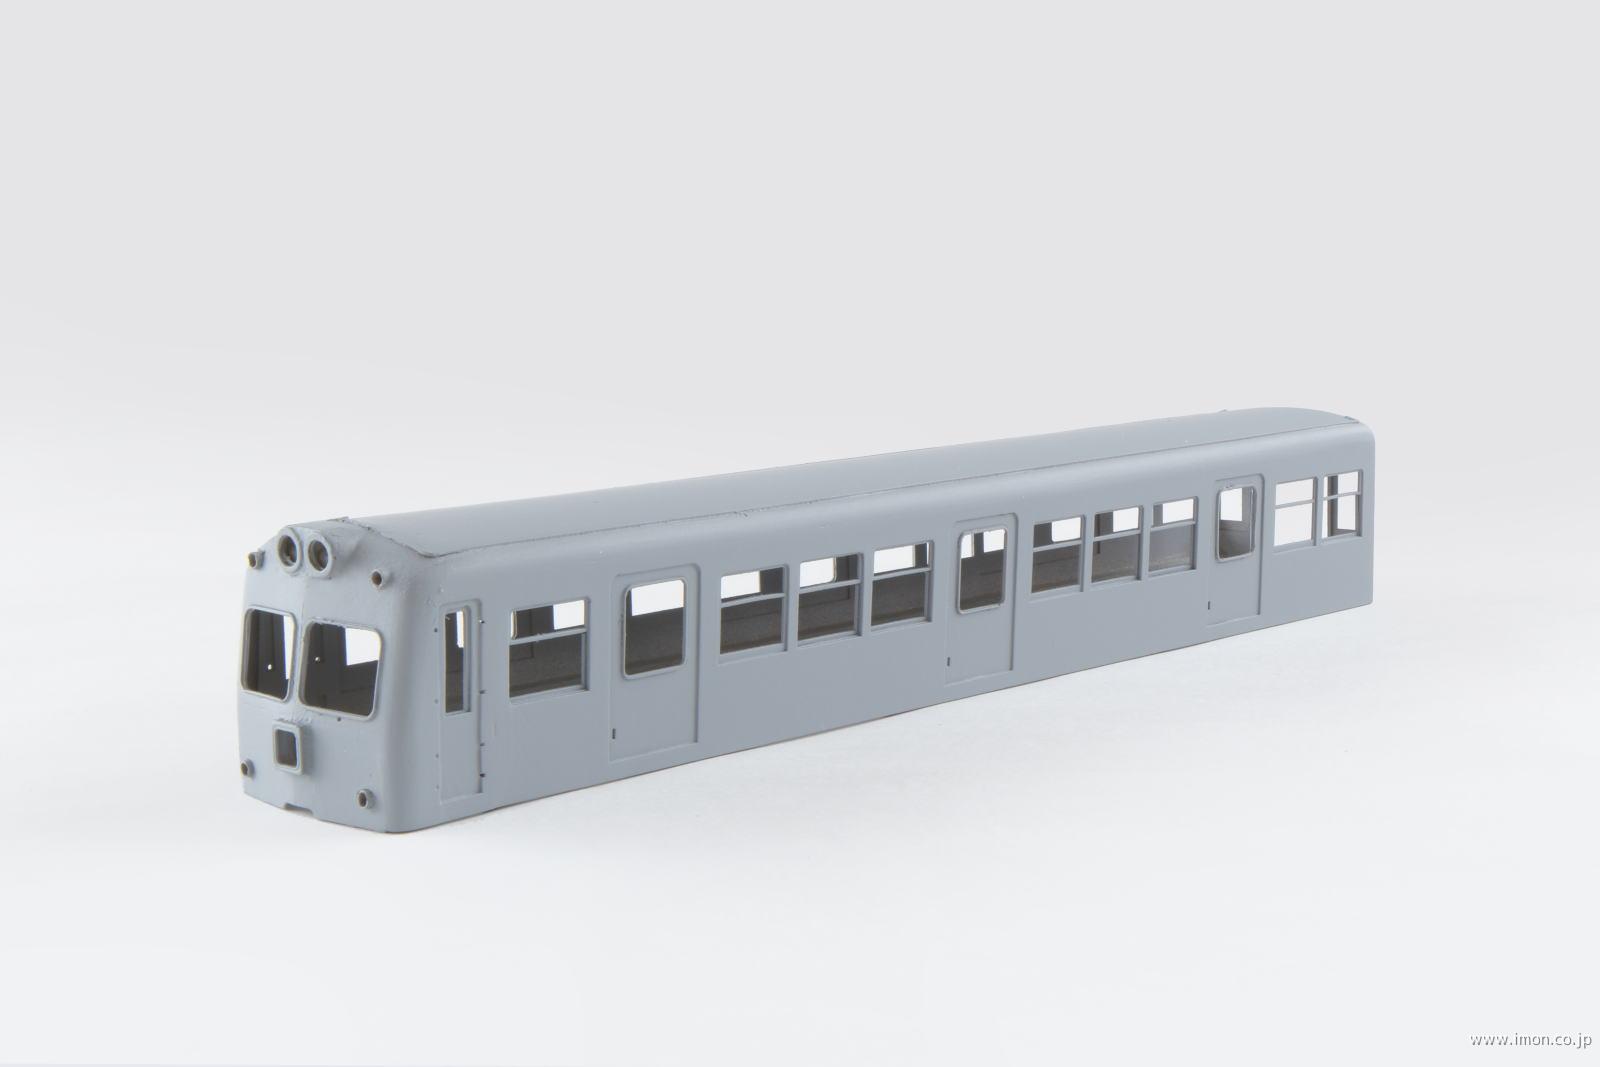 スタジオｈ ｏ 京王２７００系 ペーパーキット 鉄道模型 Models Imon